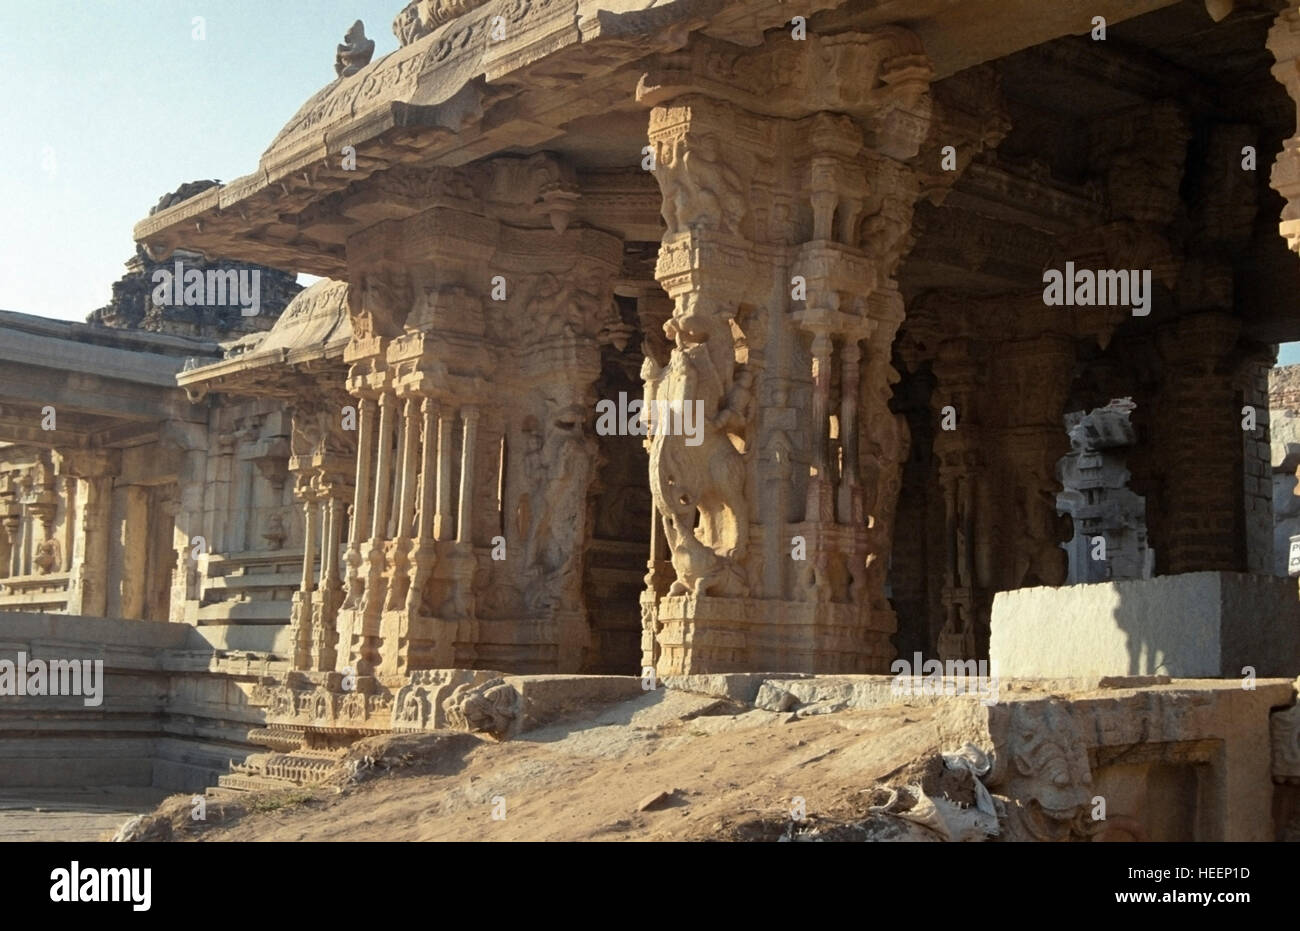 Ruines de l'Empire Vijayanagar, Hampi, Karnataka, Inde Banque D'Images